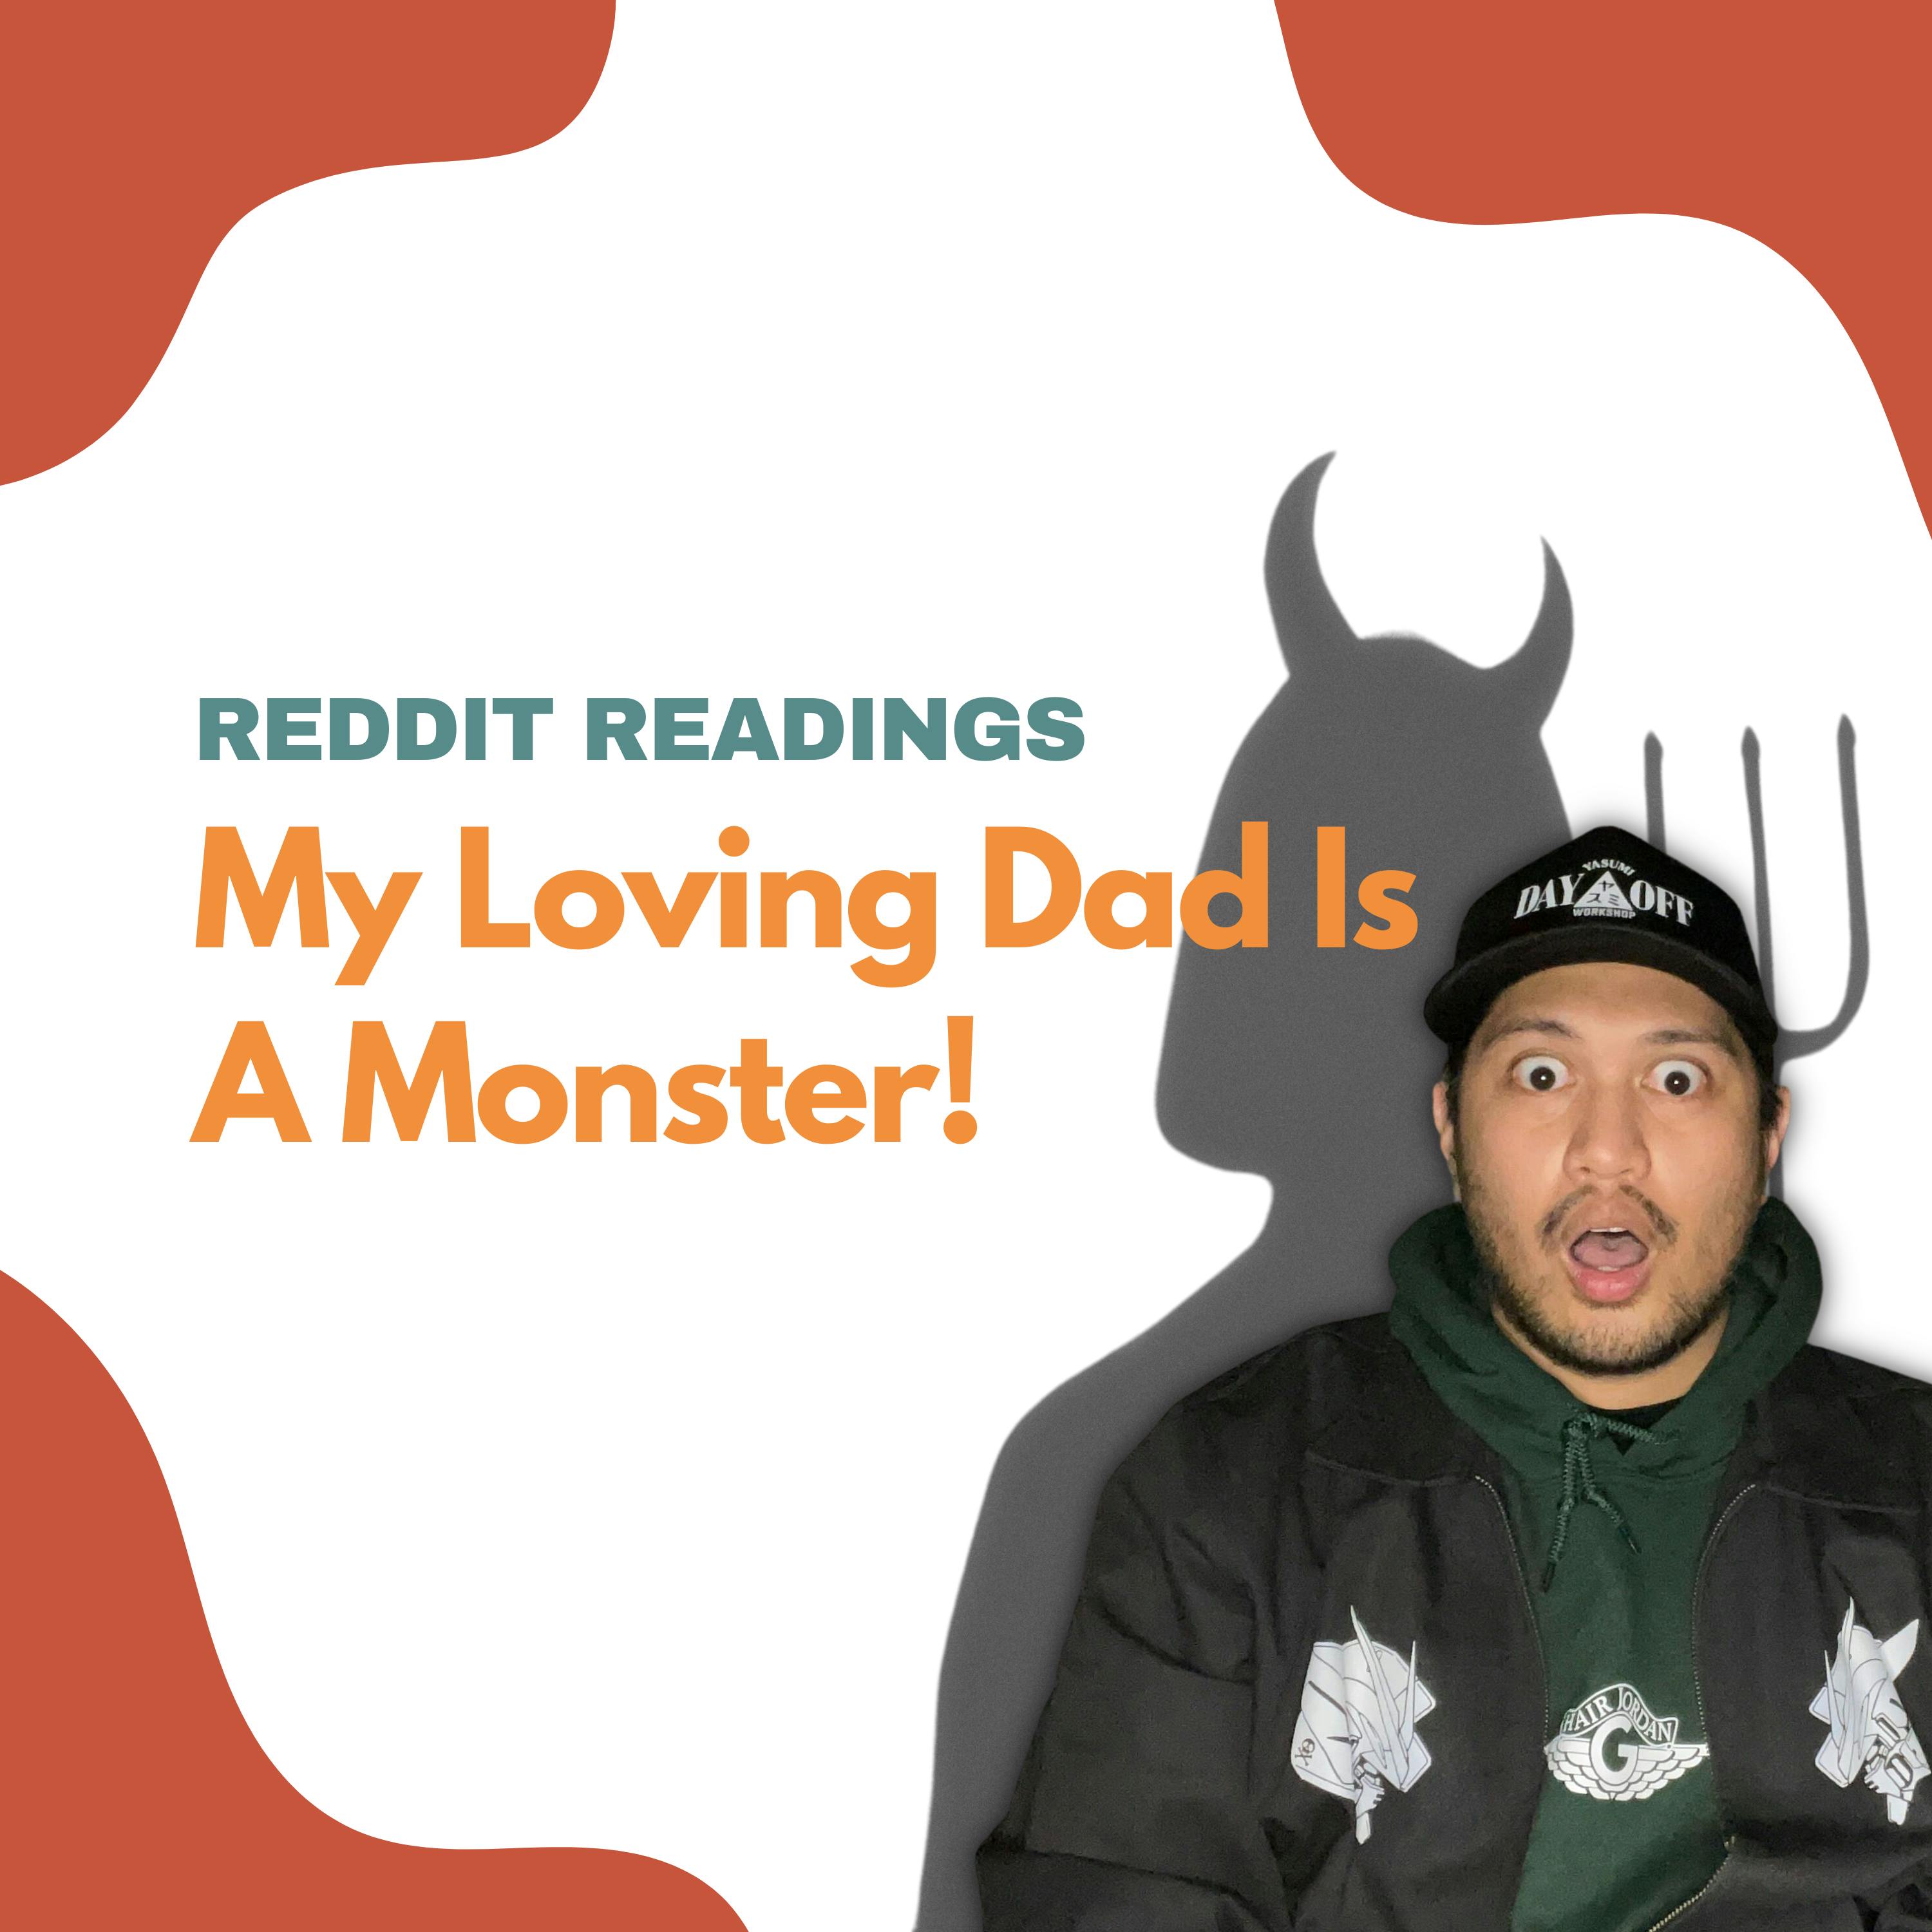 My Loving Dad Is A Monster! | Reddit Readings Image